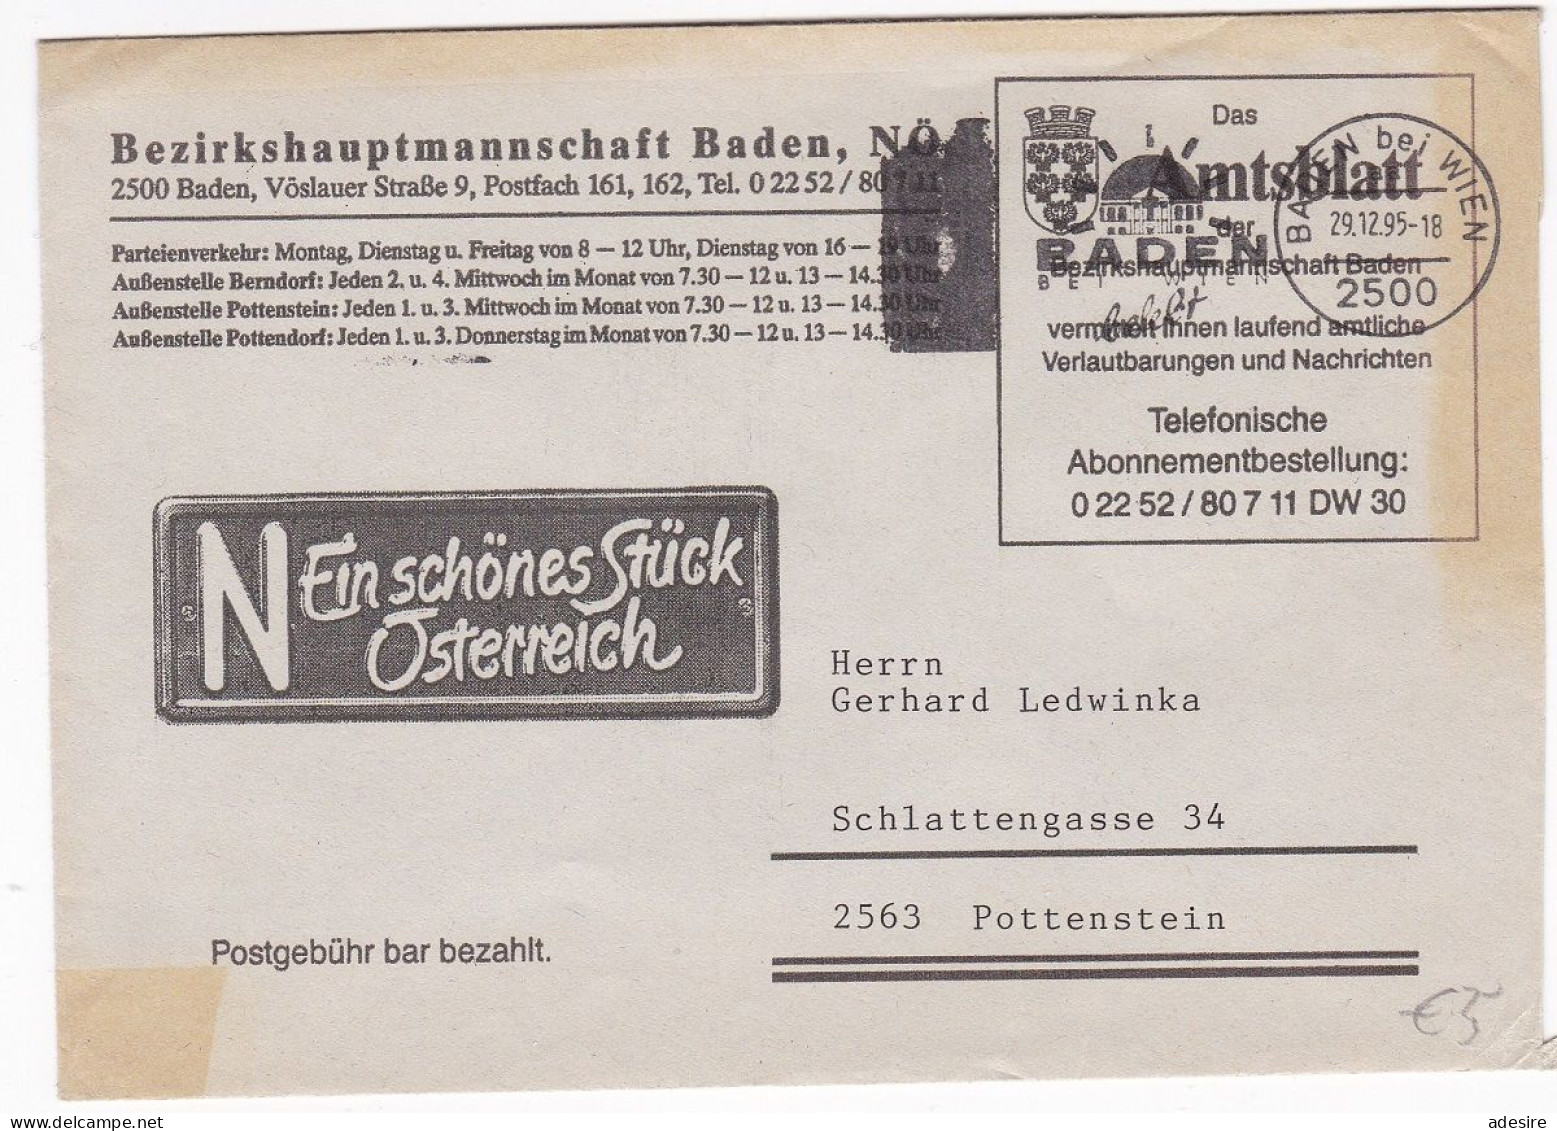 ÖSTERREICH - Firmenbrief Bezirkshauptmannschaft Baden NÖ - Das Amtsblatt Baden - Buste